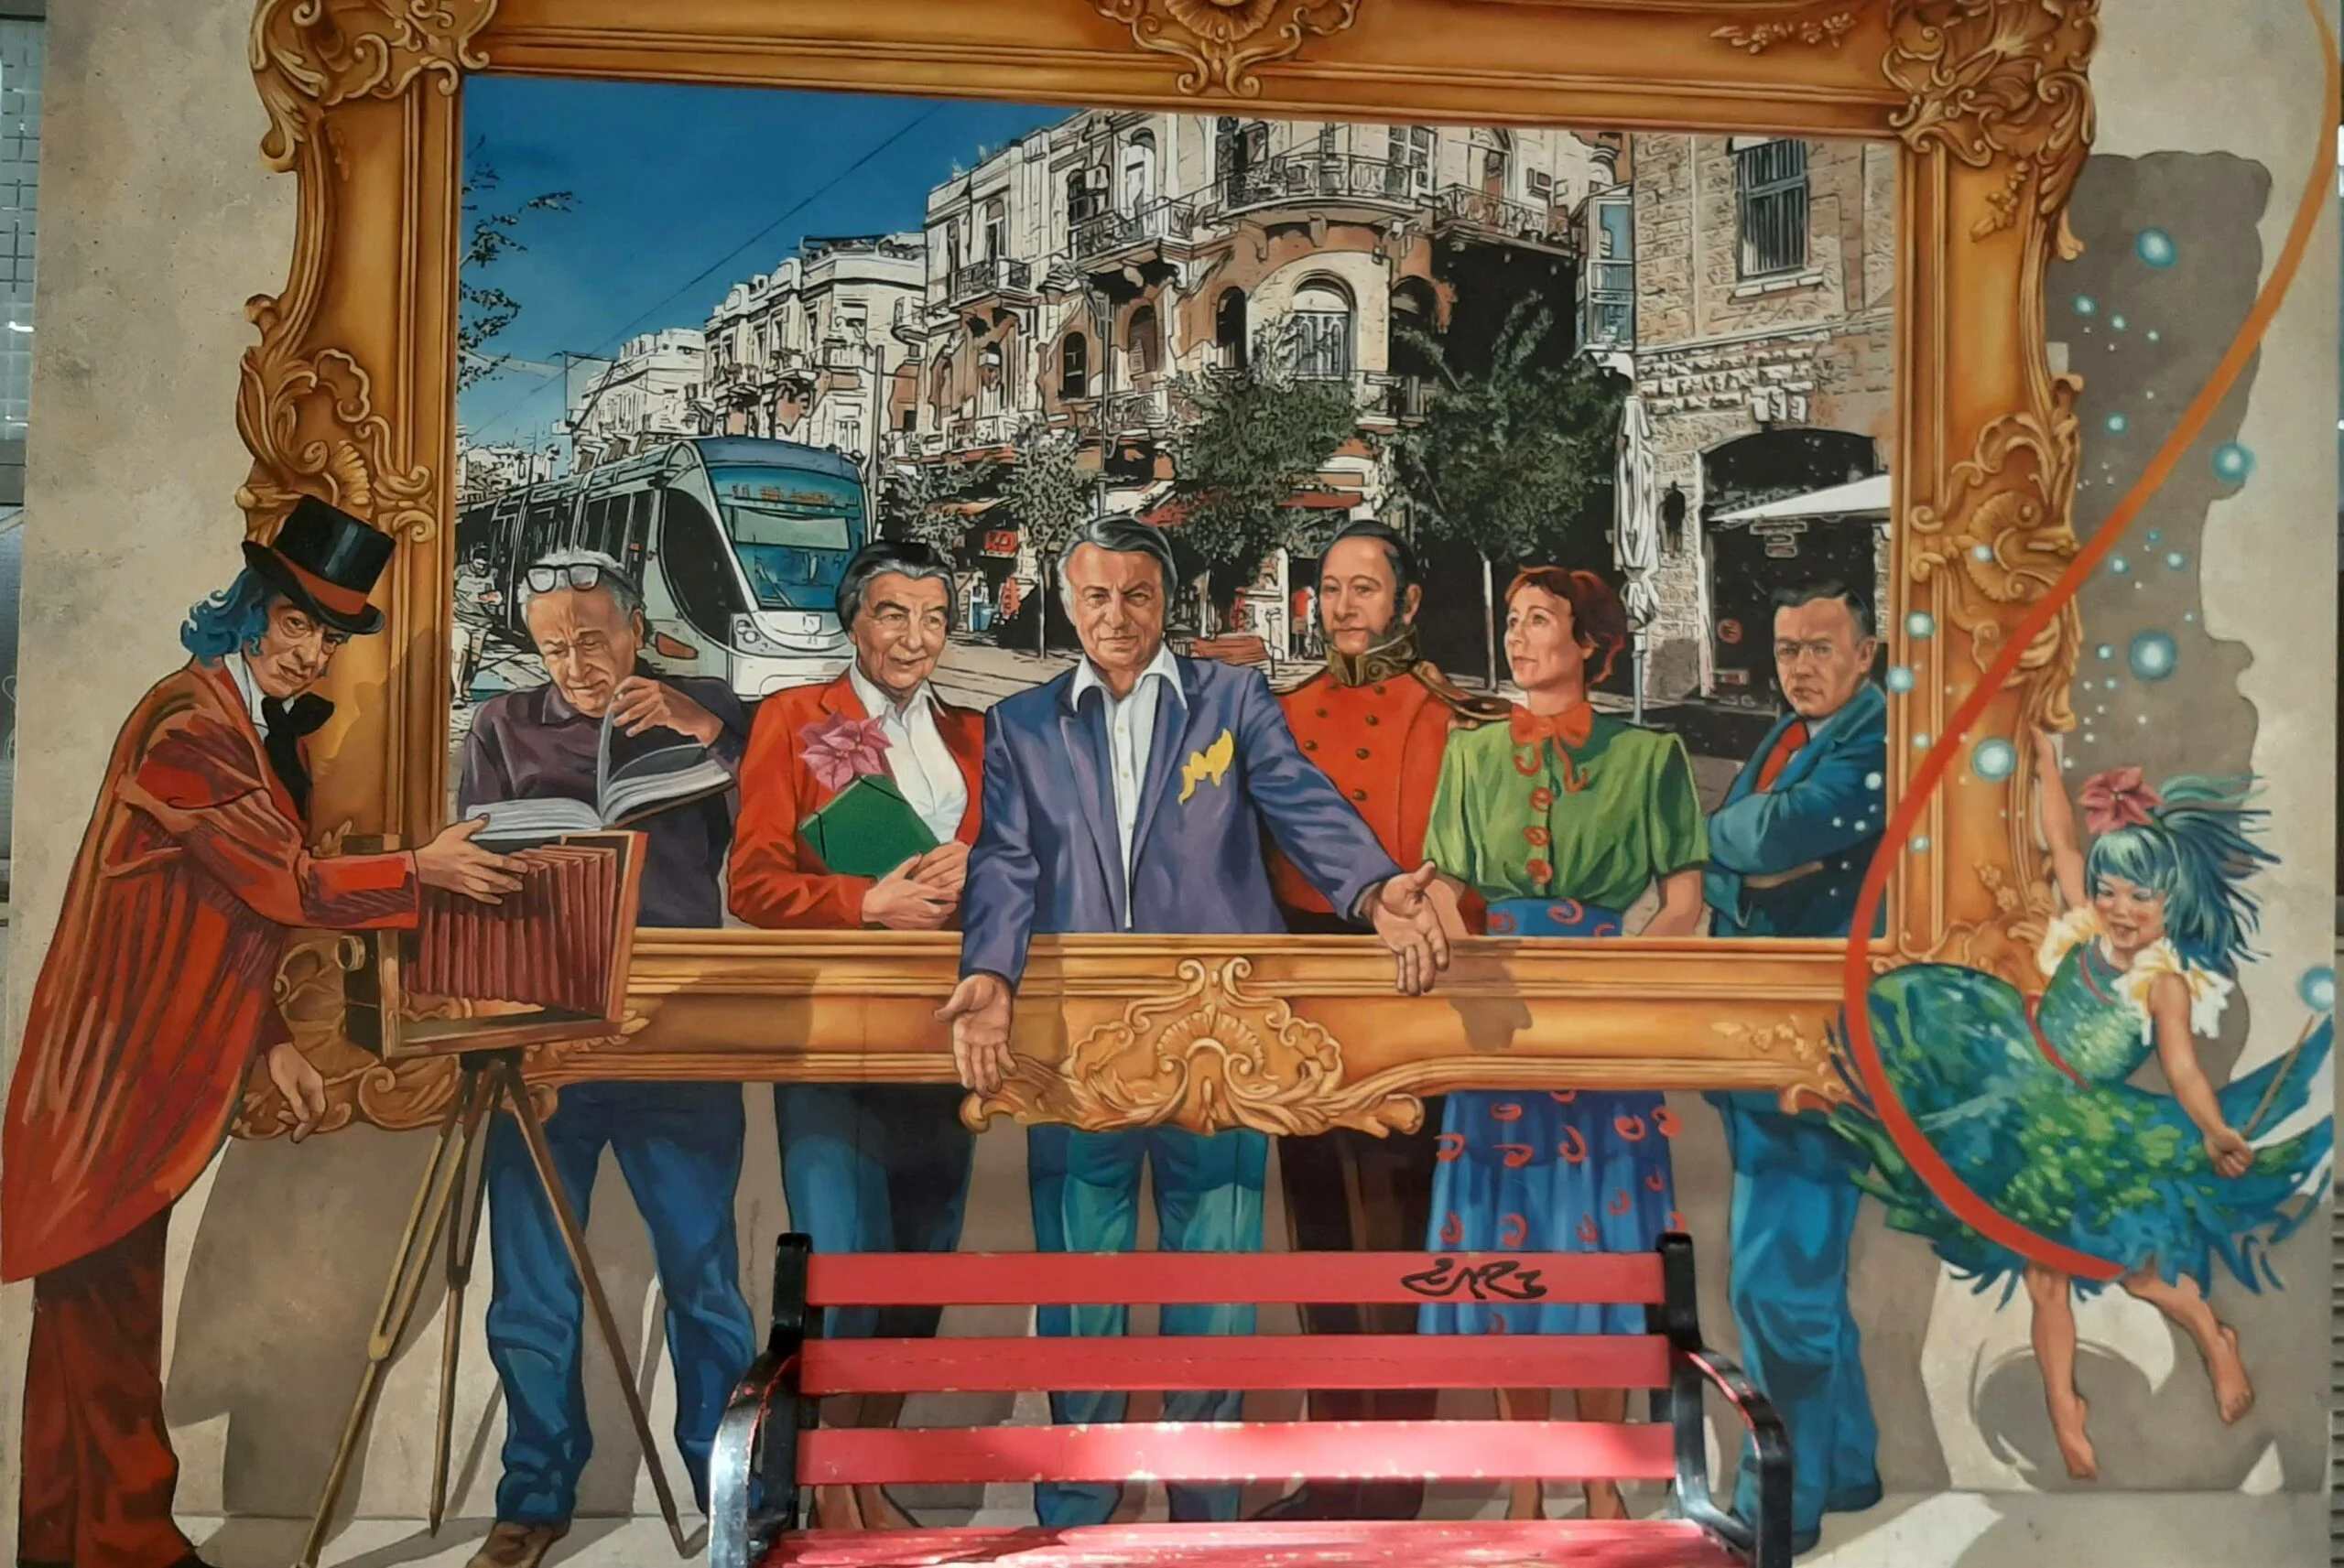 צבעים, טעמים ואמנות רחוב בירושלים. צילום: מיכל בן ארי מנור